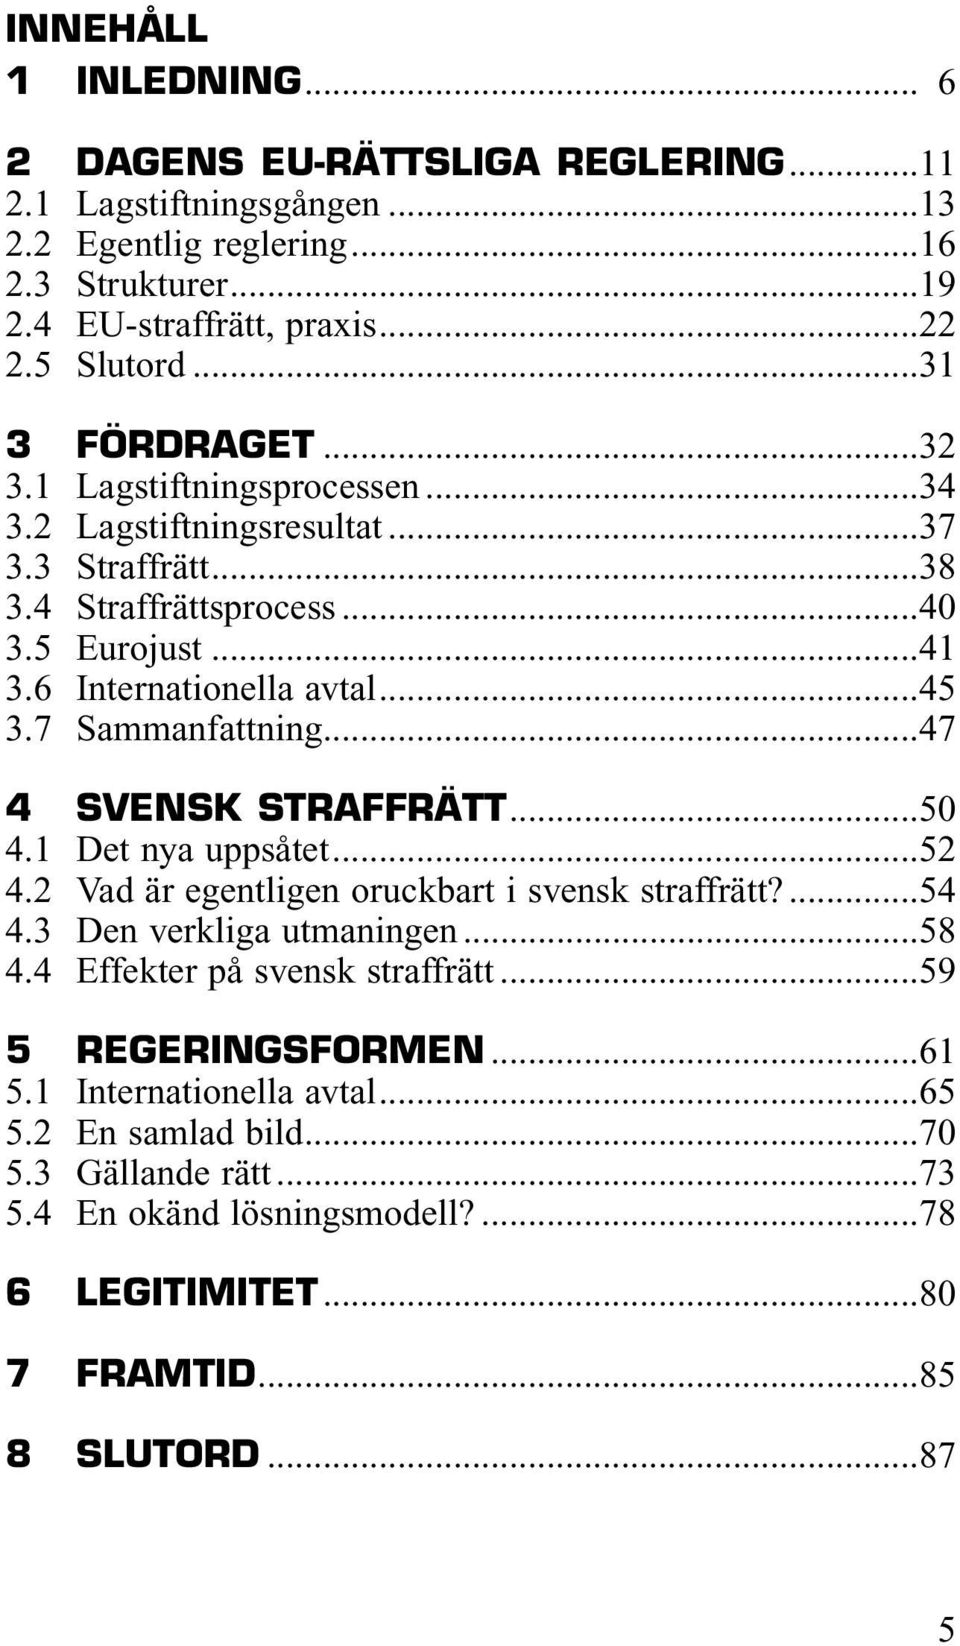 7 Sammanfattning...47 4 SVENSK STRAFFRÄTT...50 4.1 Det nya uppsåtet...52 4.2 Vad är egentligen oruckbart i svensk straffrätt?...54 4.3 Den verkliga utmaningen...58 4.